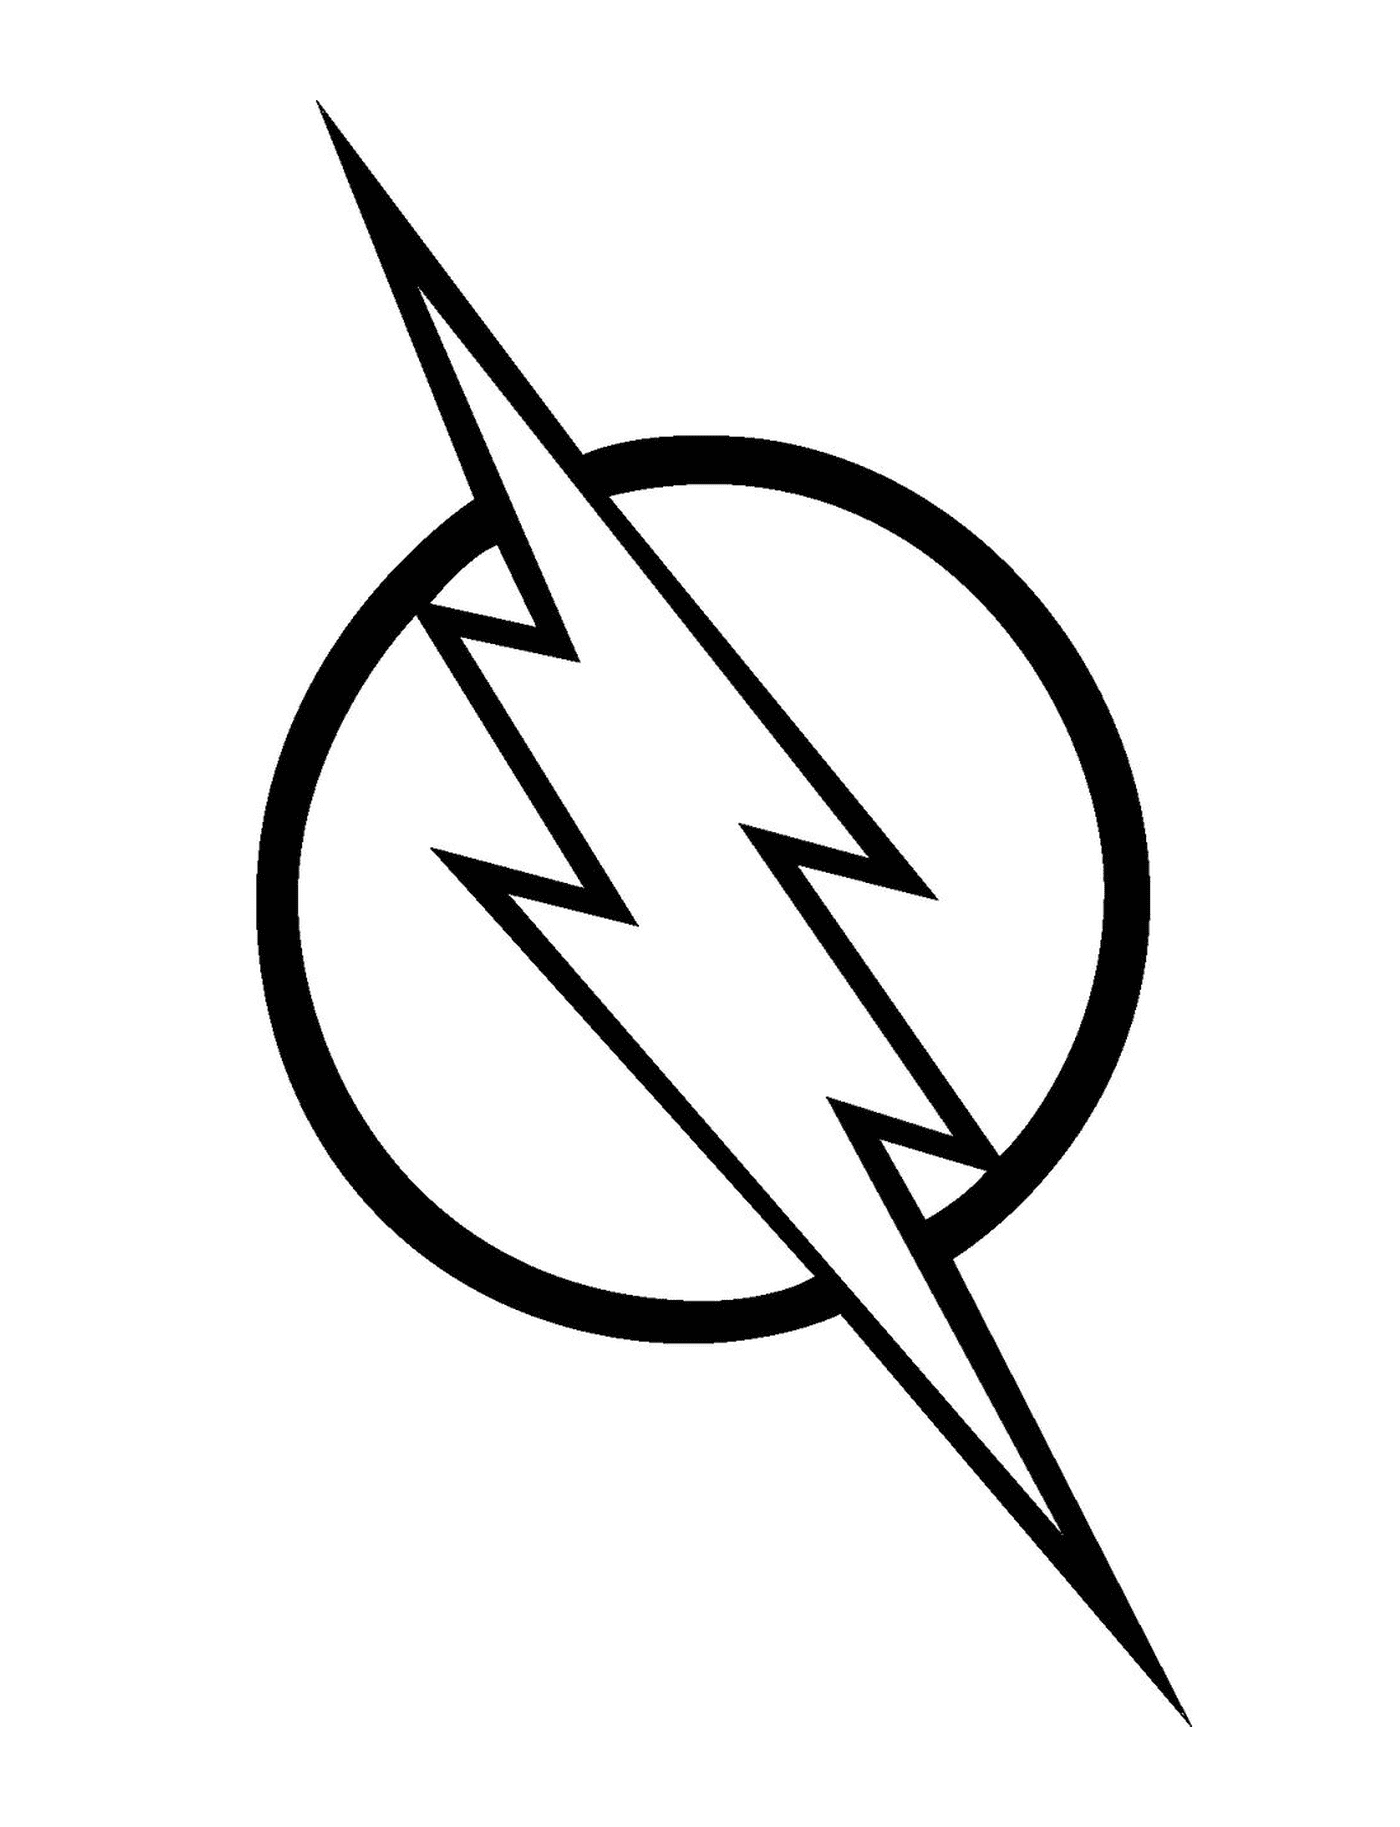  El logo del superhéroe Flash 